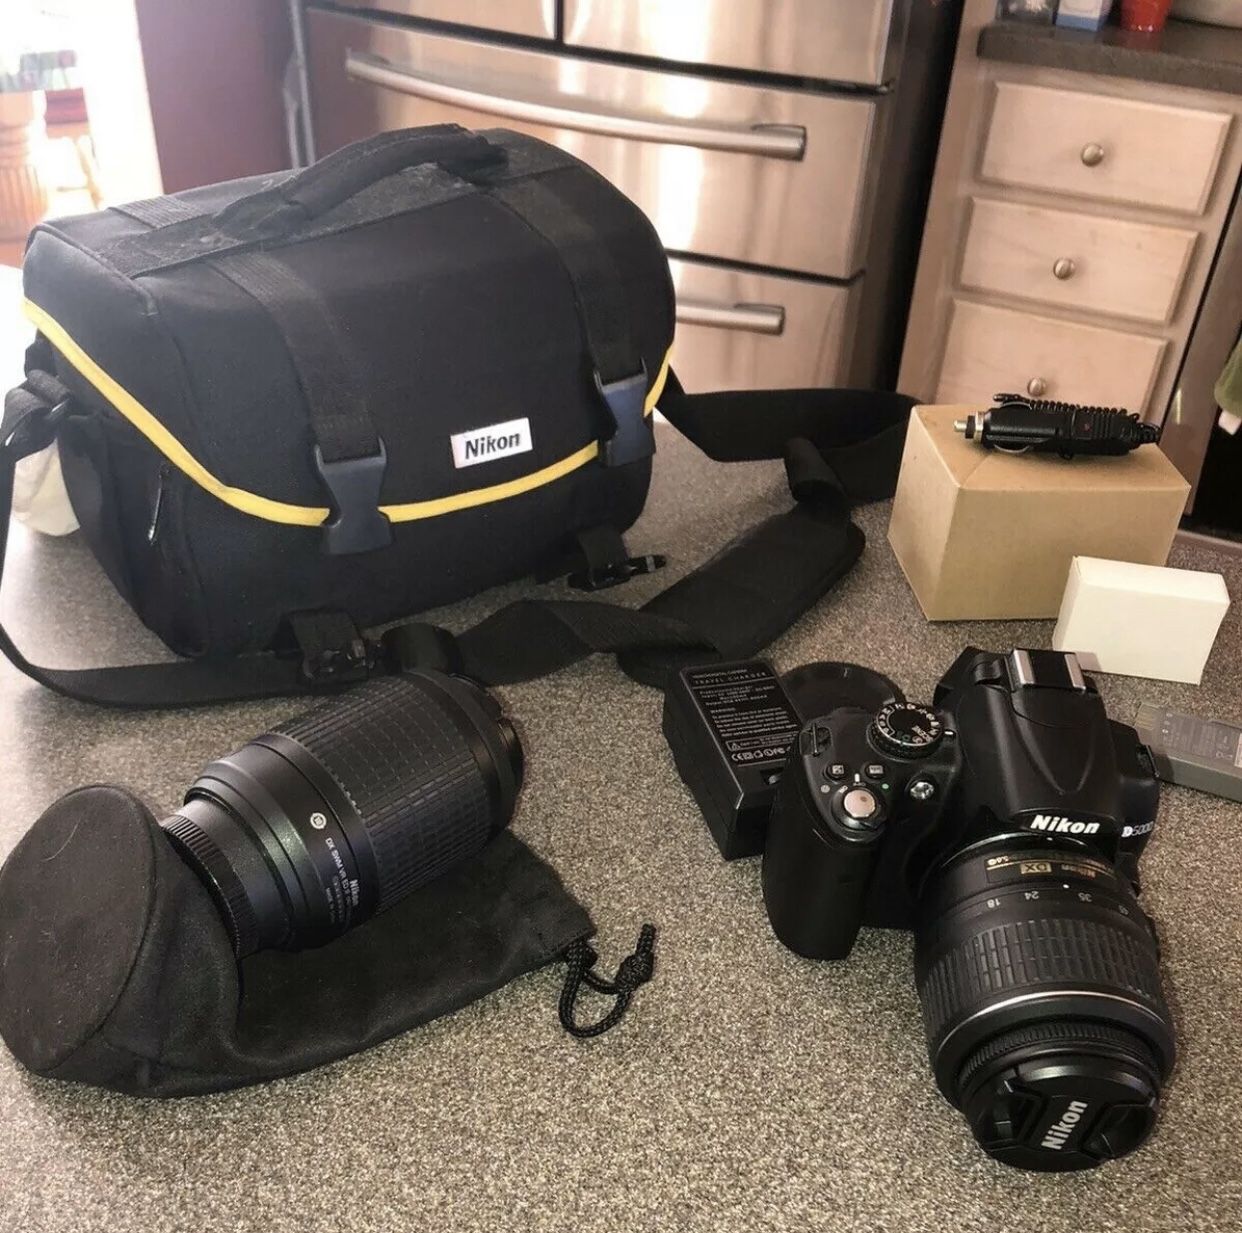 Nikon D5000 Digital SLR Camera with 18-55mm VR Lens & 55-200 mm Lens